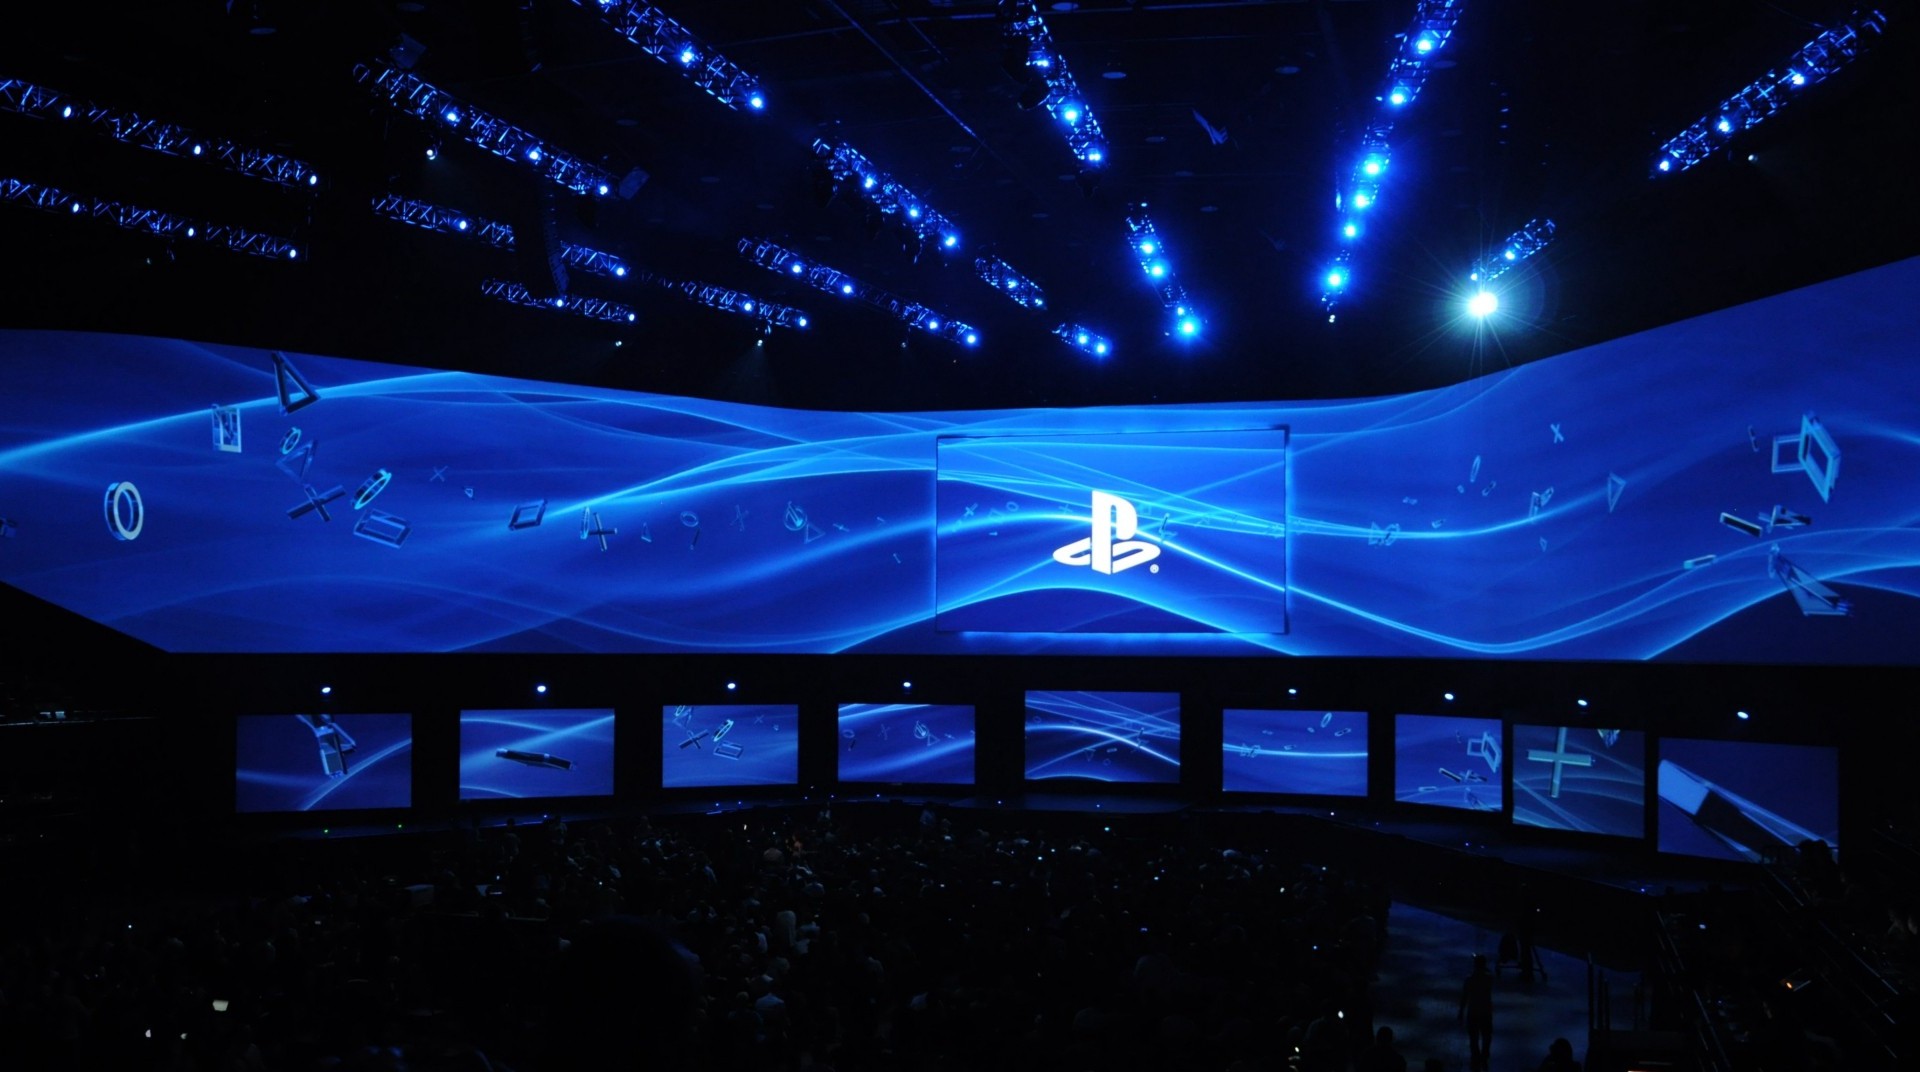 PlayStation Showcase: hora, como e onde assistir, e mais sobre o evento